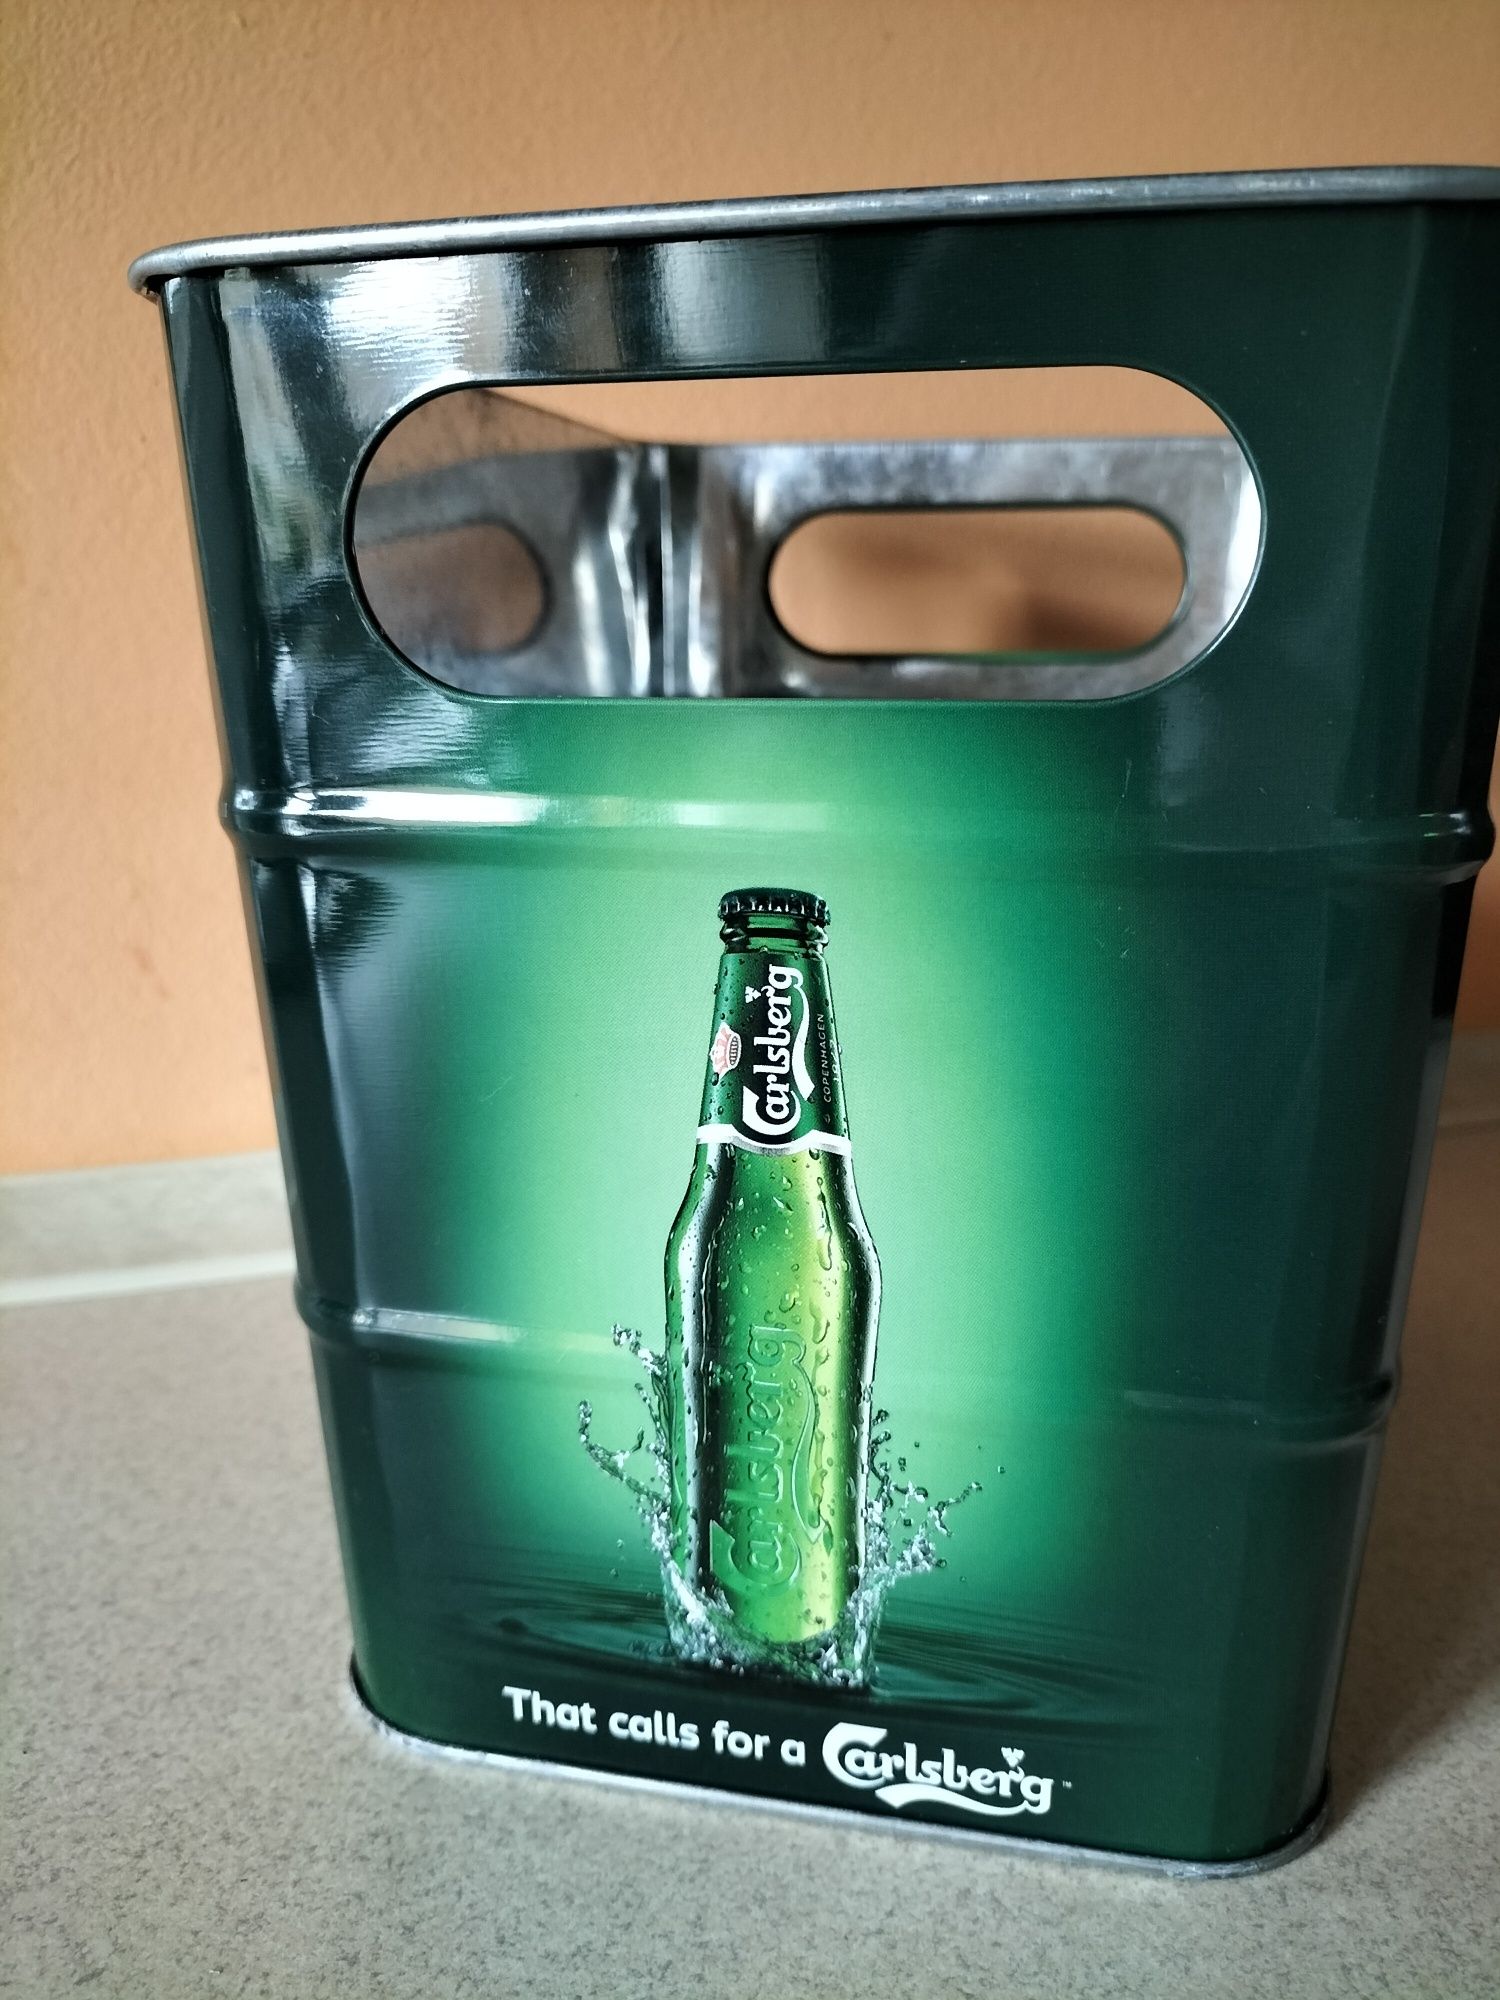 Cooler pojemnik do chłodzenia piwa Carlsberg